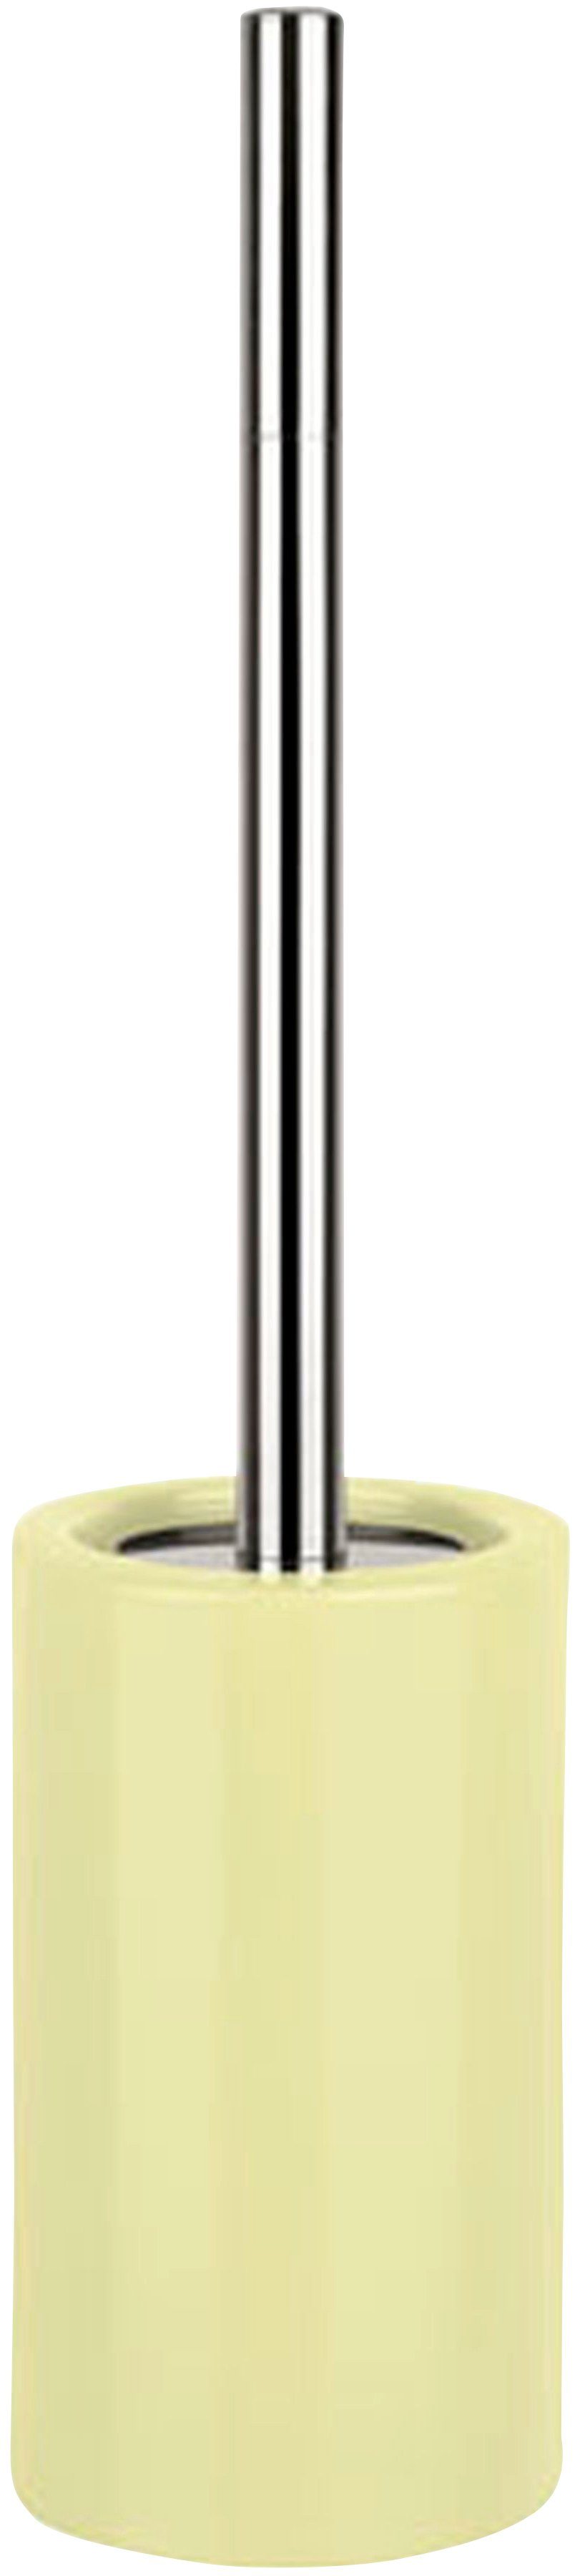 spirella WC-Garnitur TUBE, ist WC-Bürste gelb auswechselbar